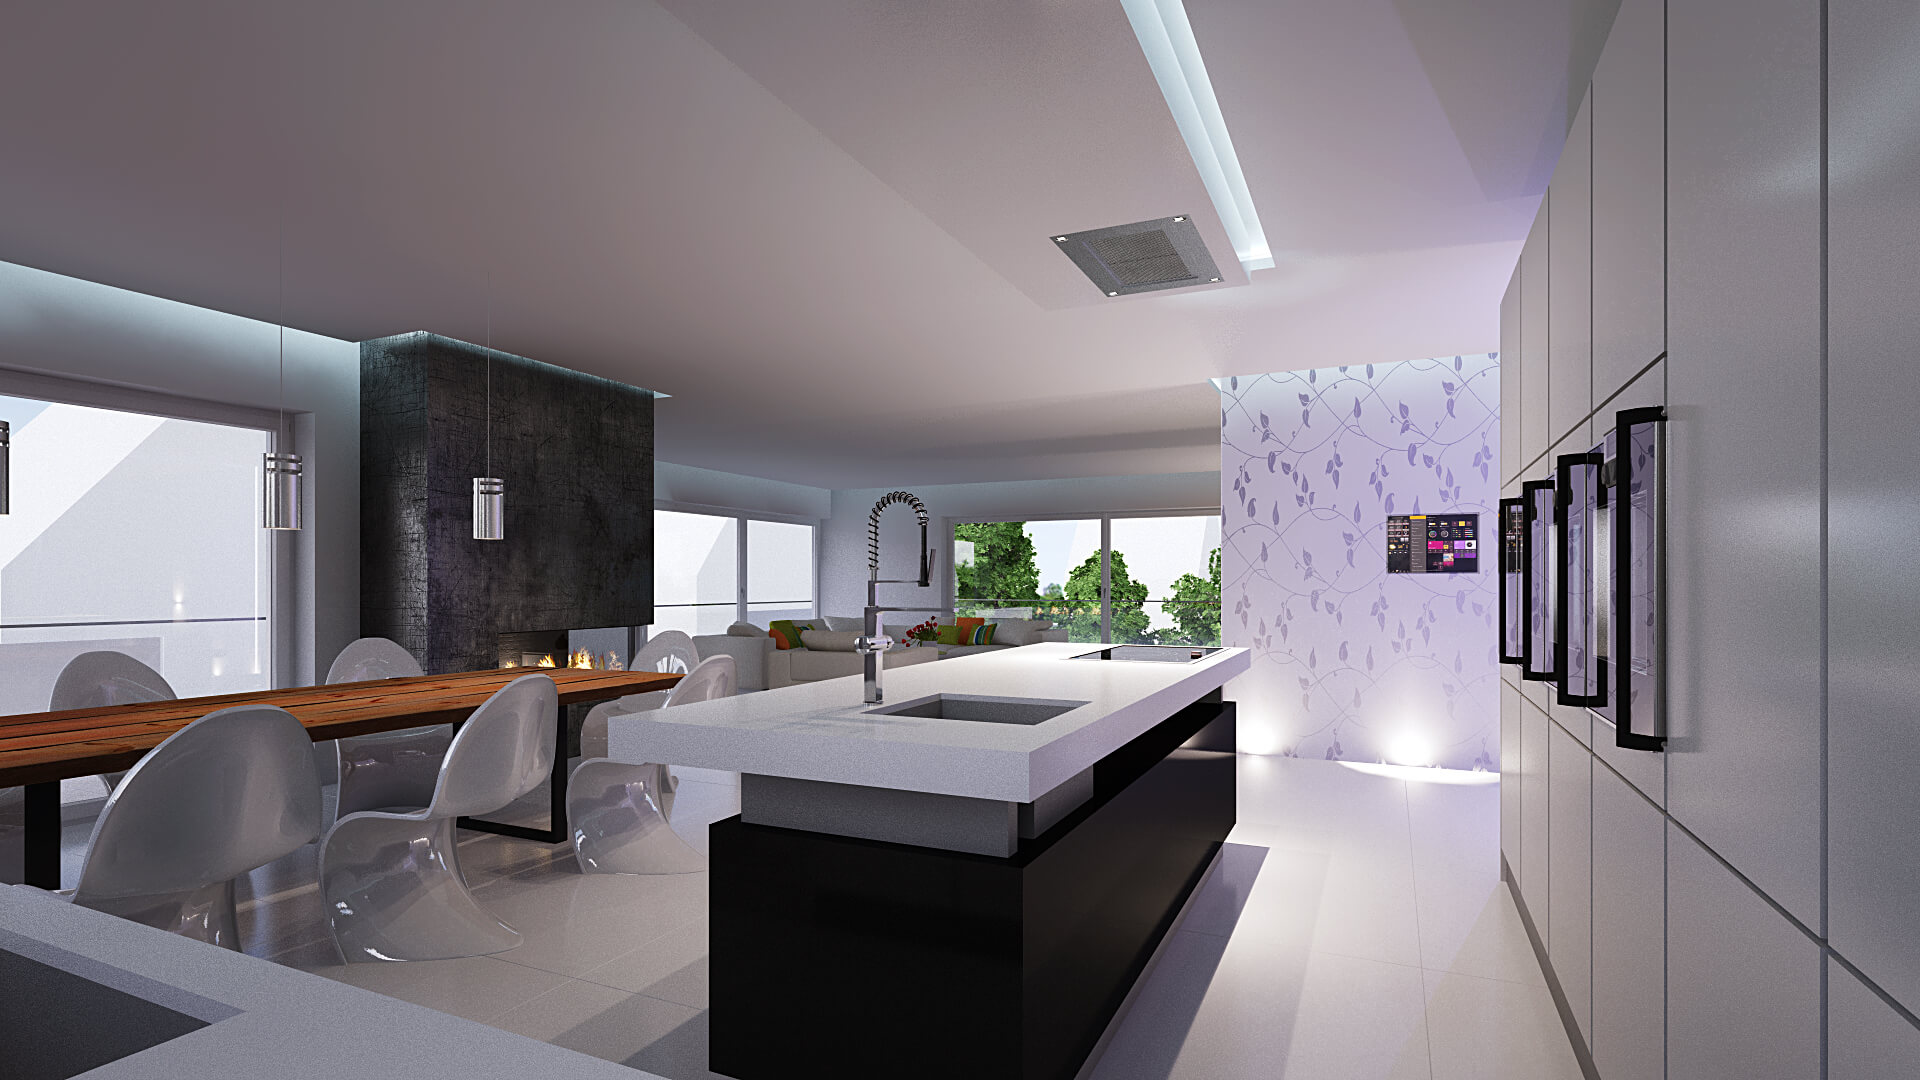 Interior Design für eine moderne Küche in schwarz-weiß